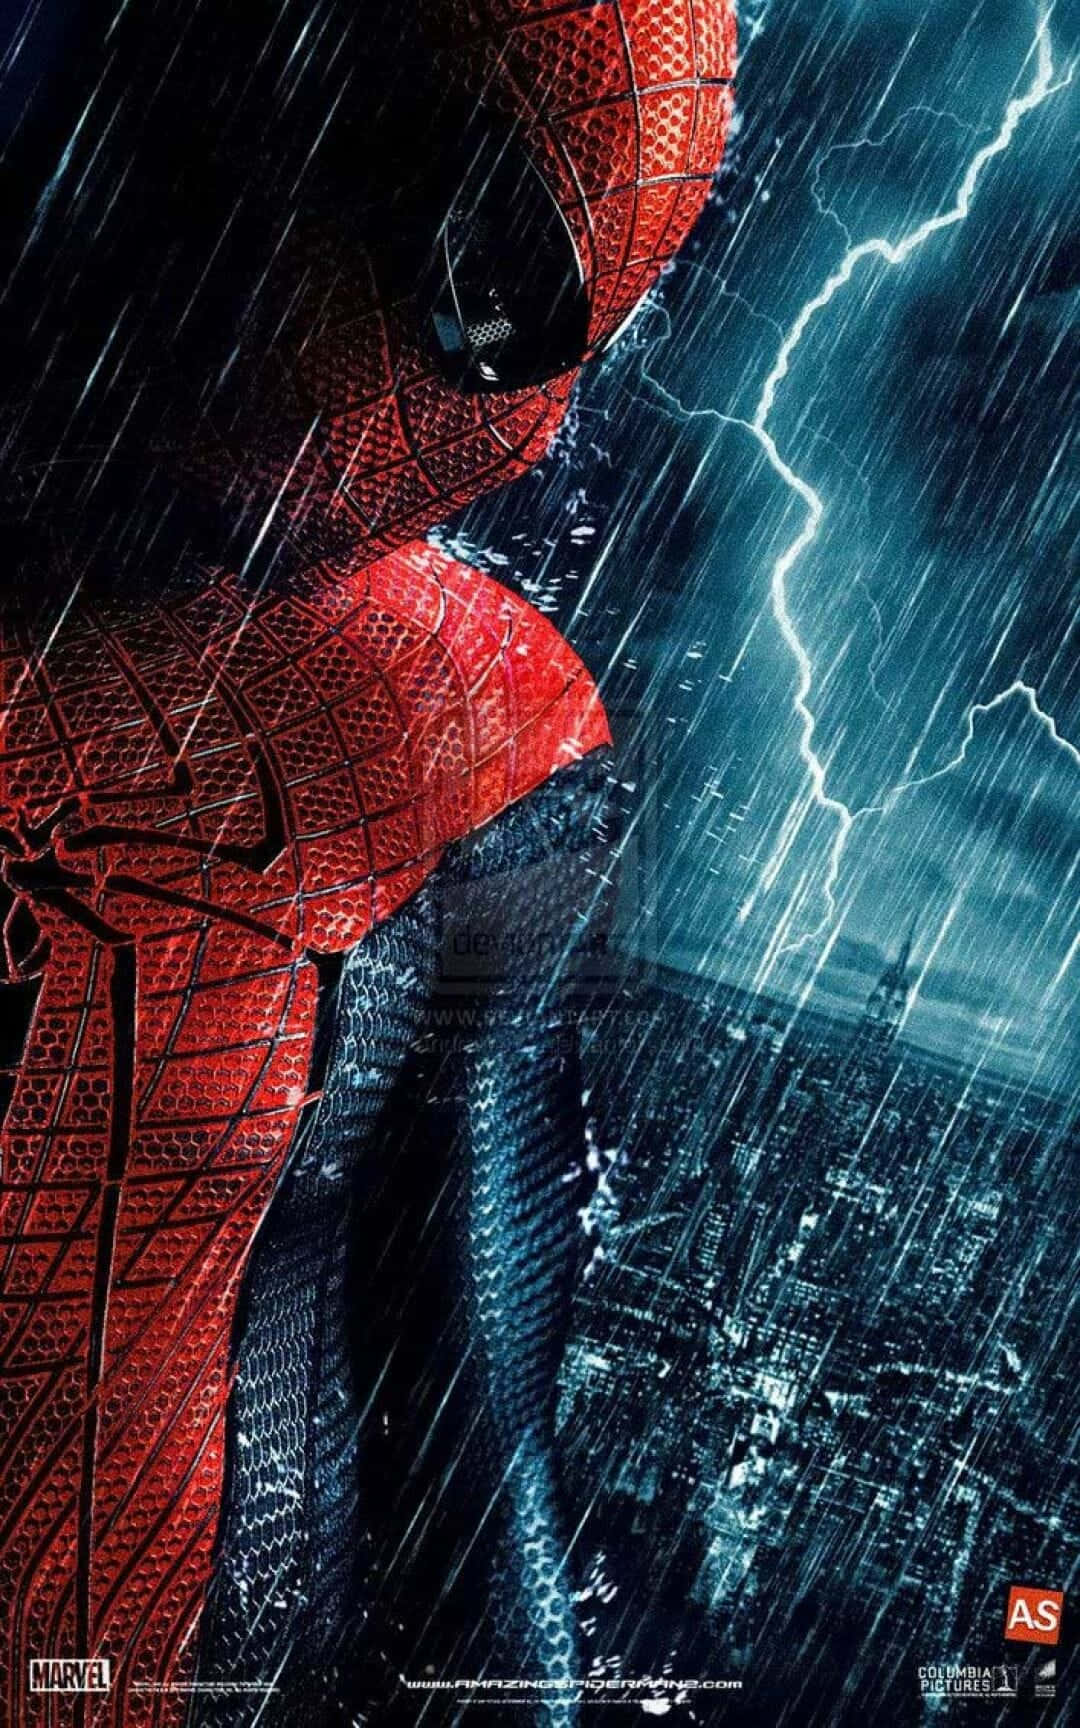 Holdir Grenzenlose Unterhaltung Mit Dem Von Amazing Spider Man Inspirierten Iphone. Wallpaper